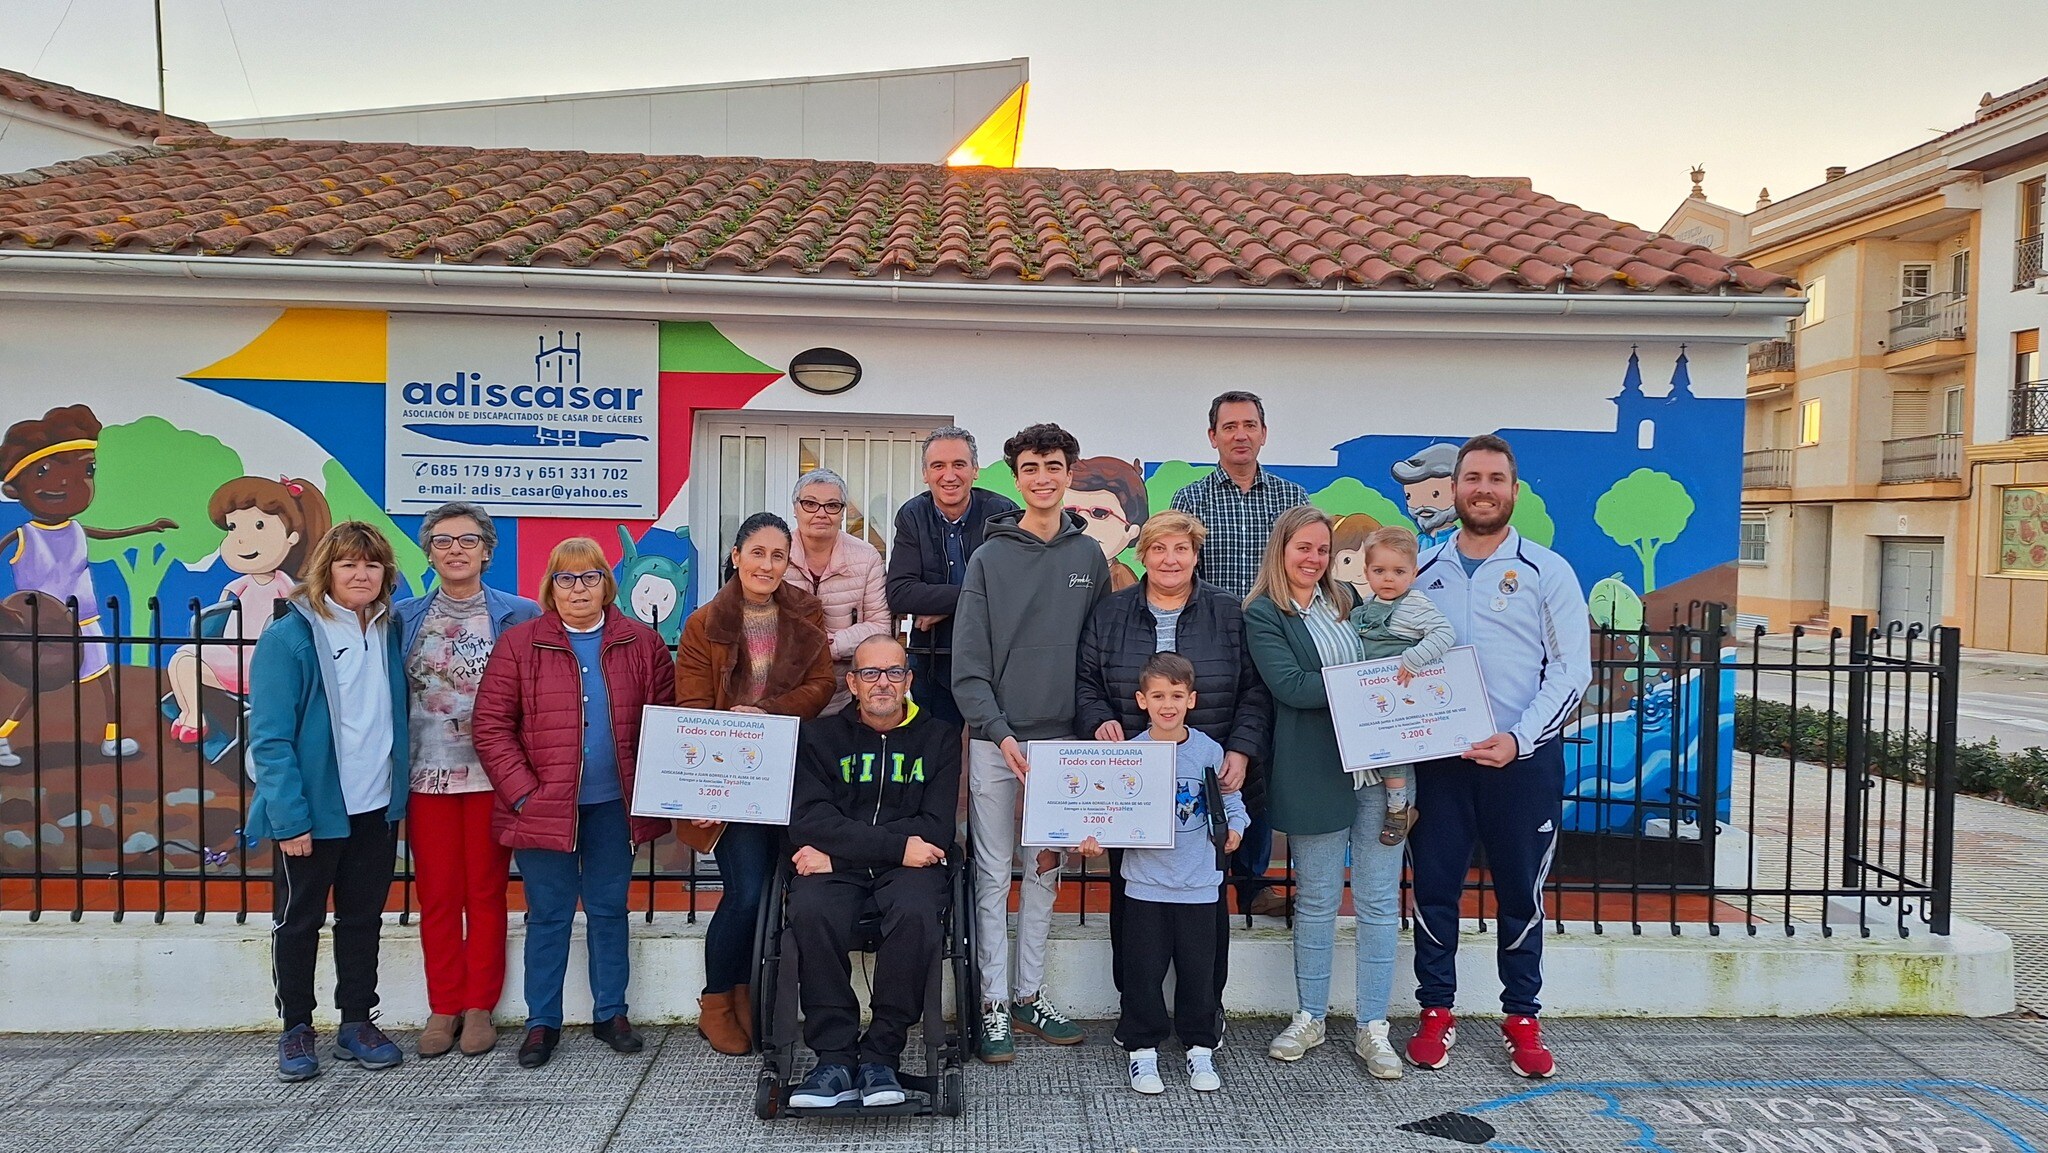 Adiscasar dona 3.200 euros de sus campañas solidarias a favor de la asociación Taysa-Hex